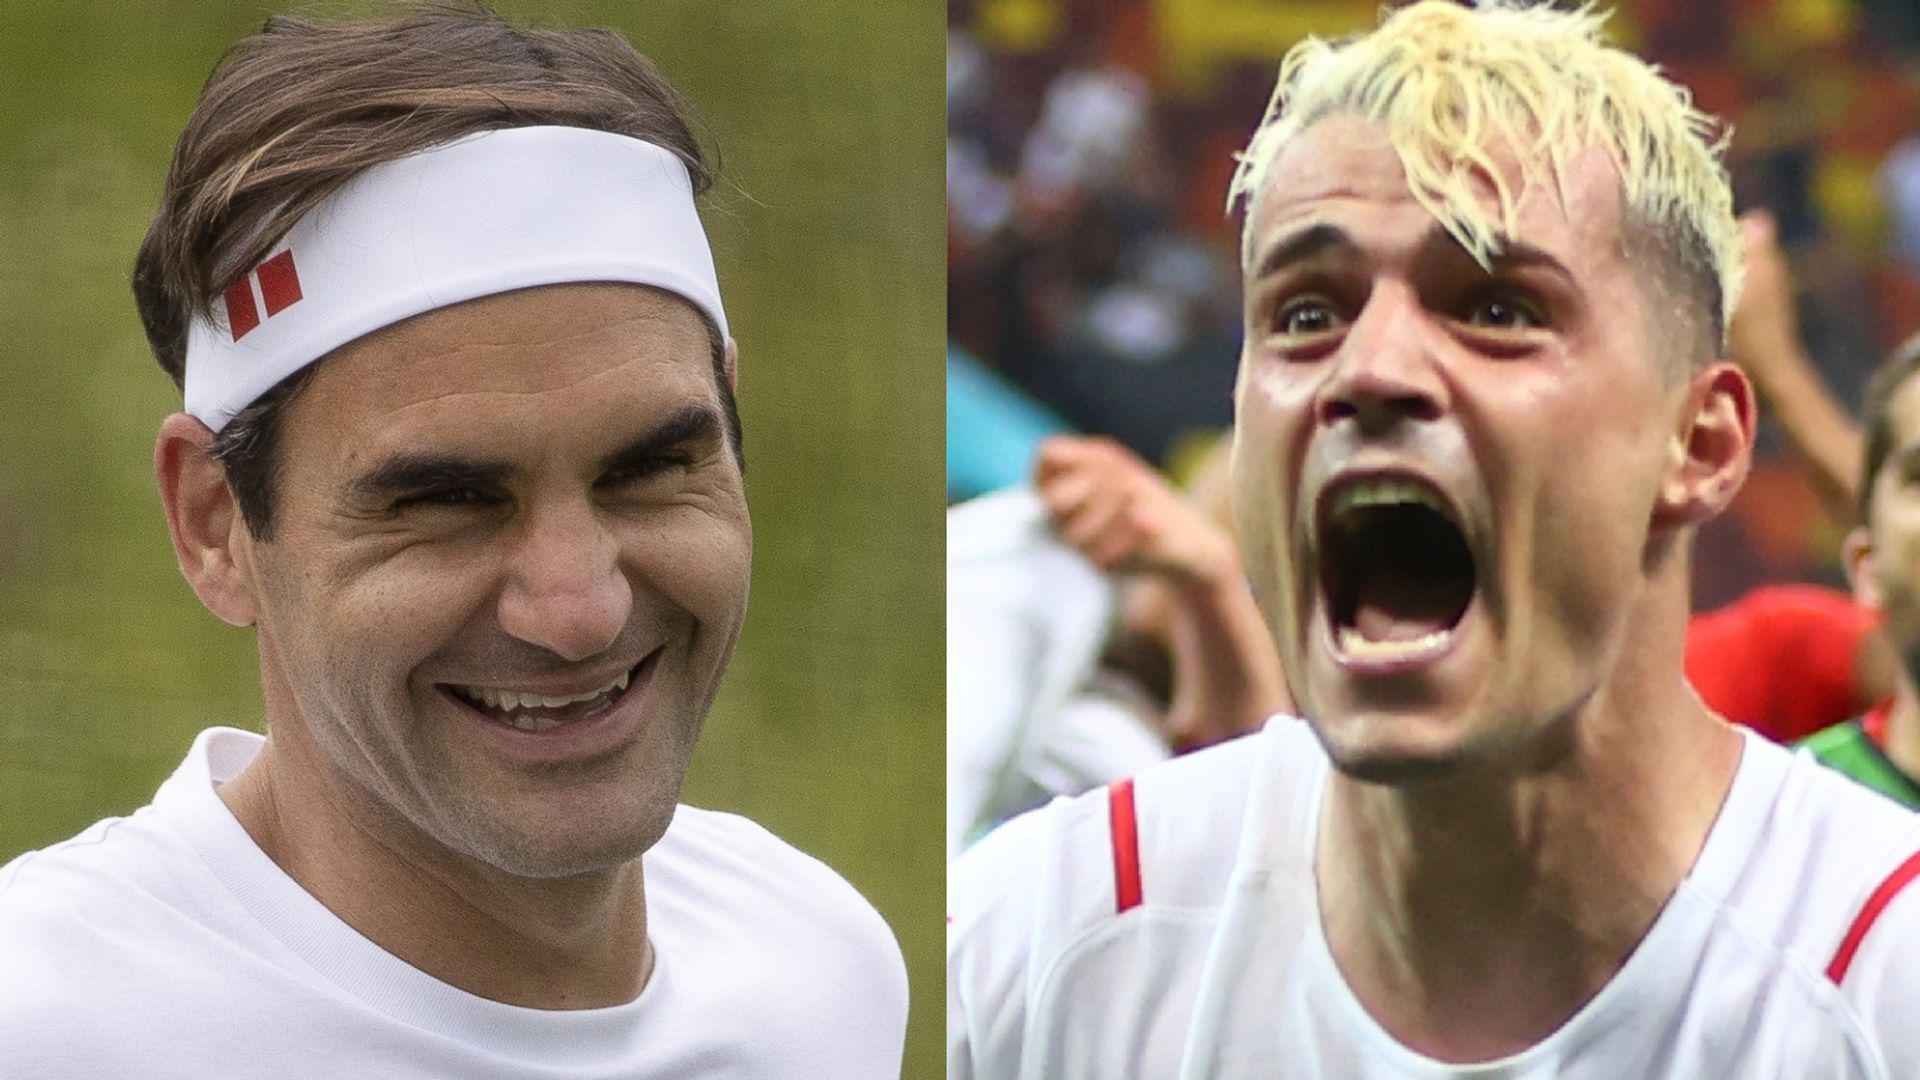 Federer: I hope the best for Switzerland